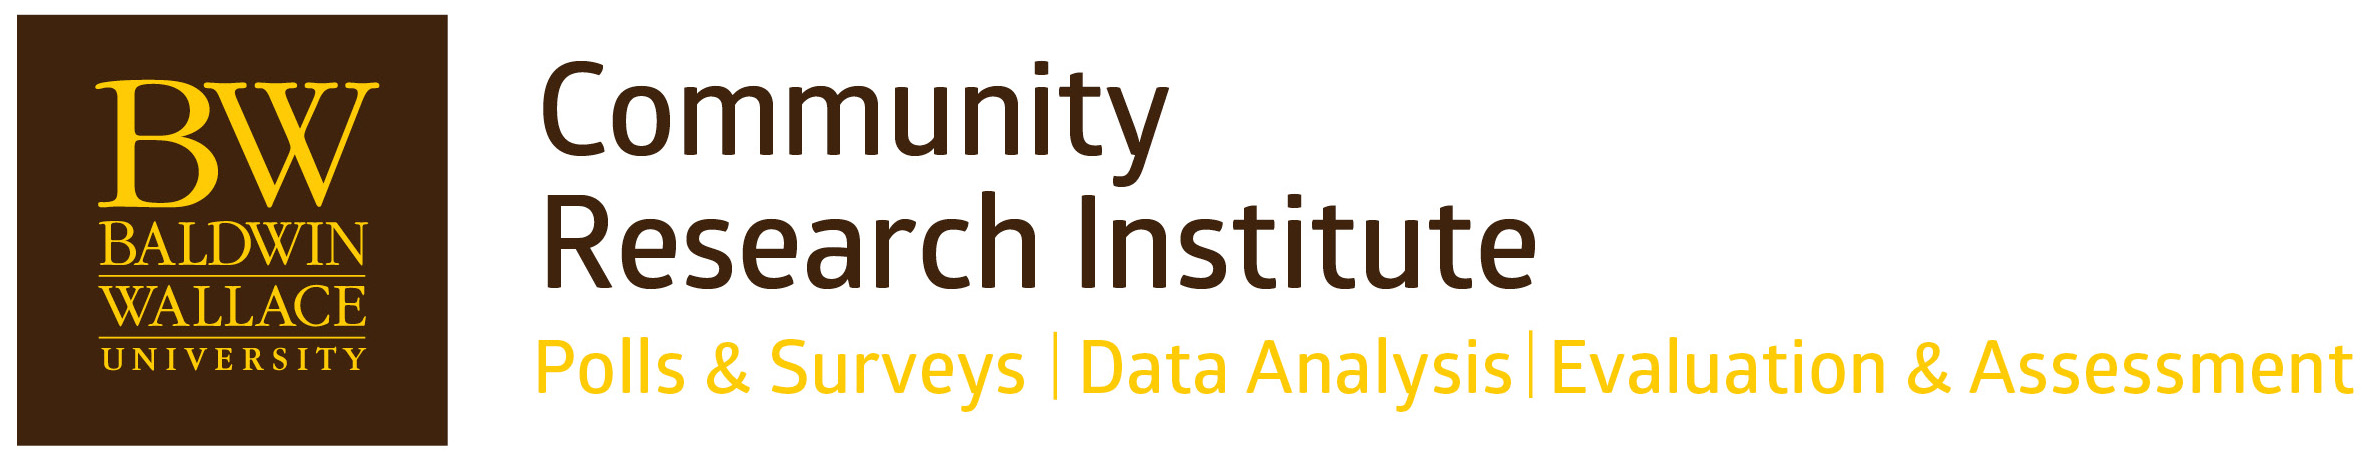 Community Research Institute logo